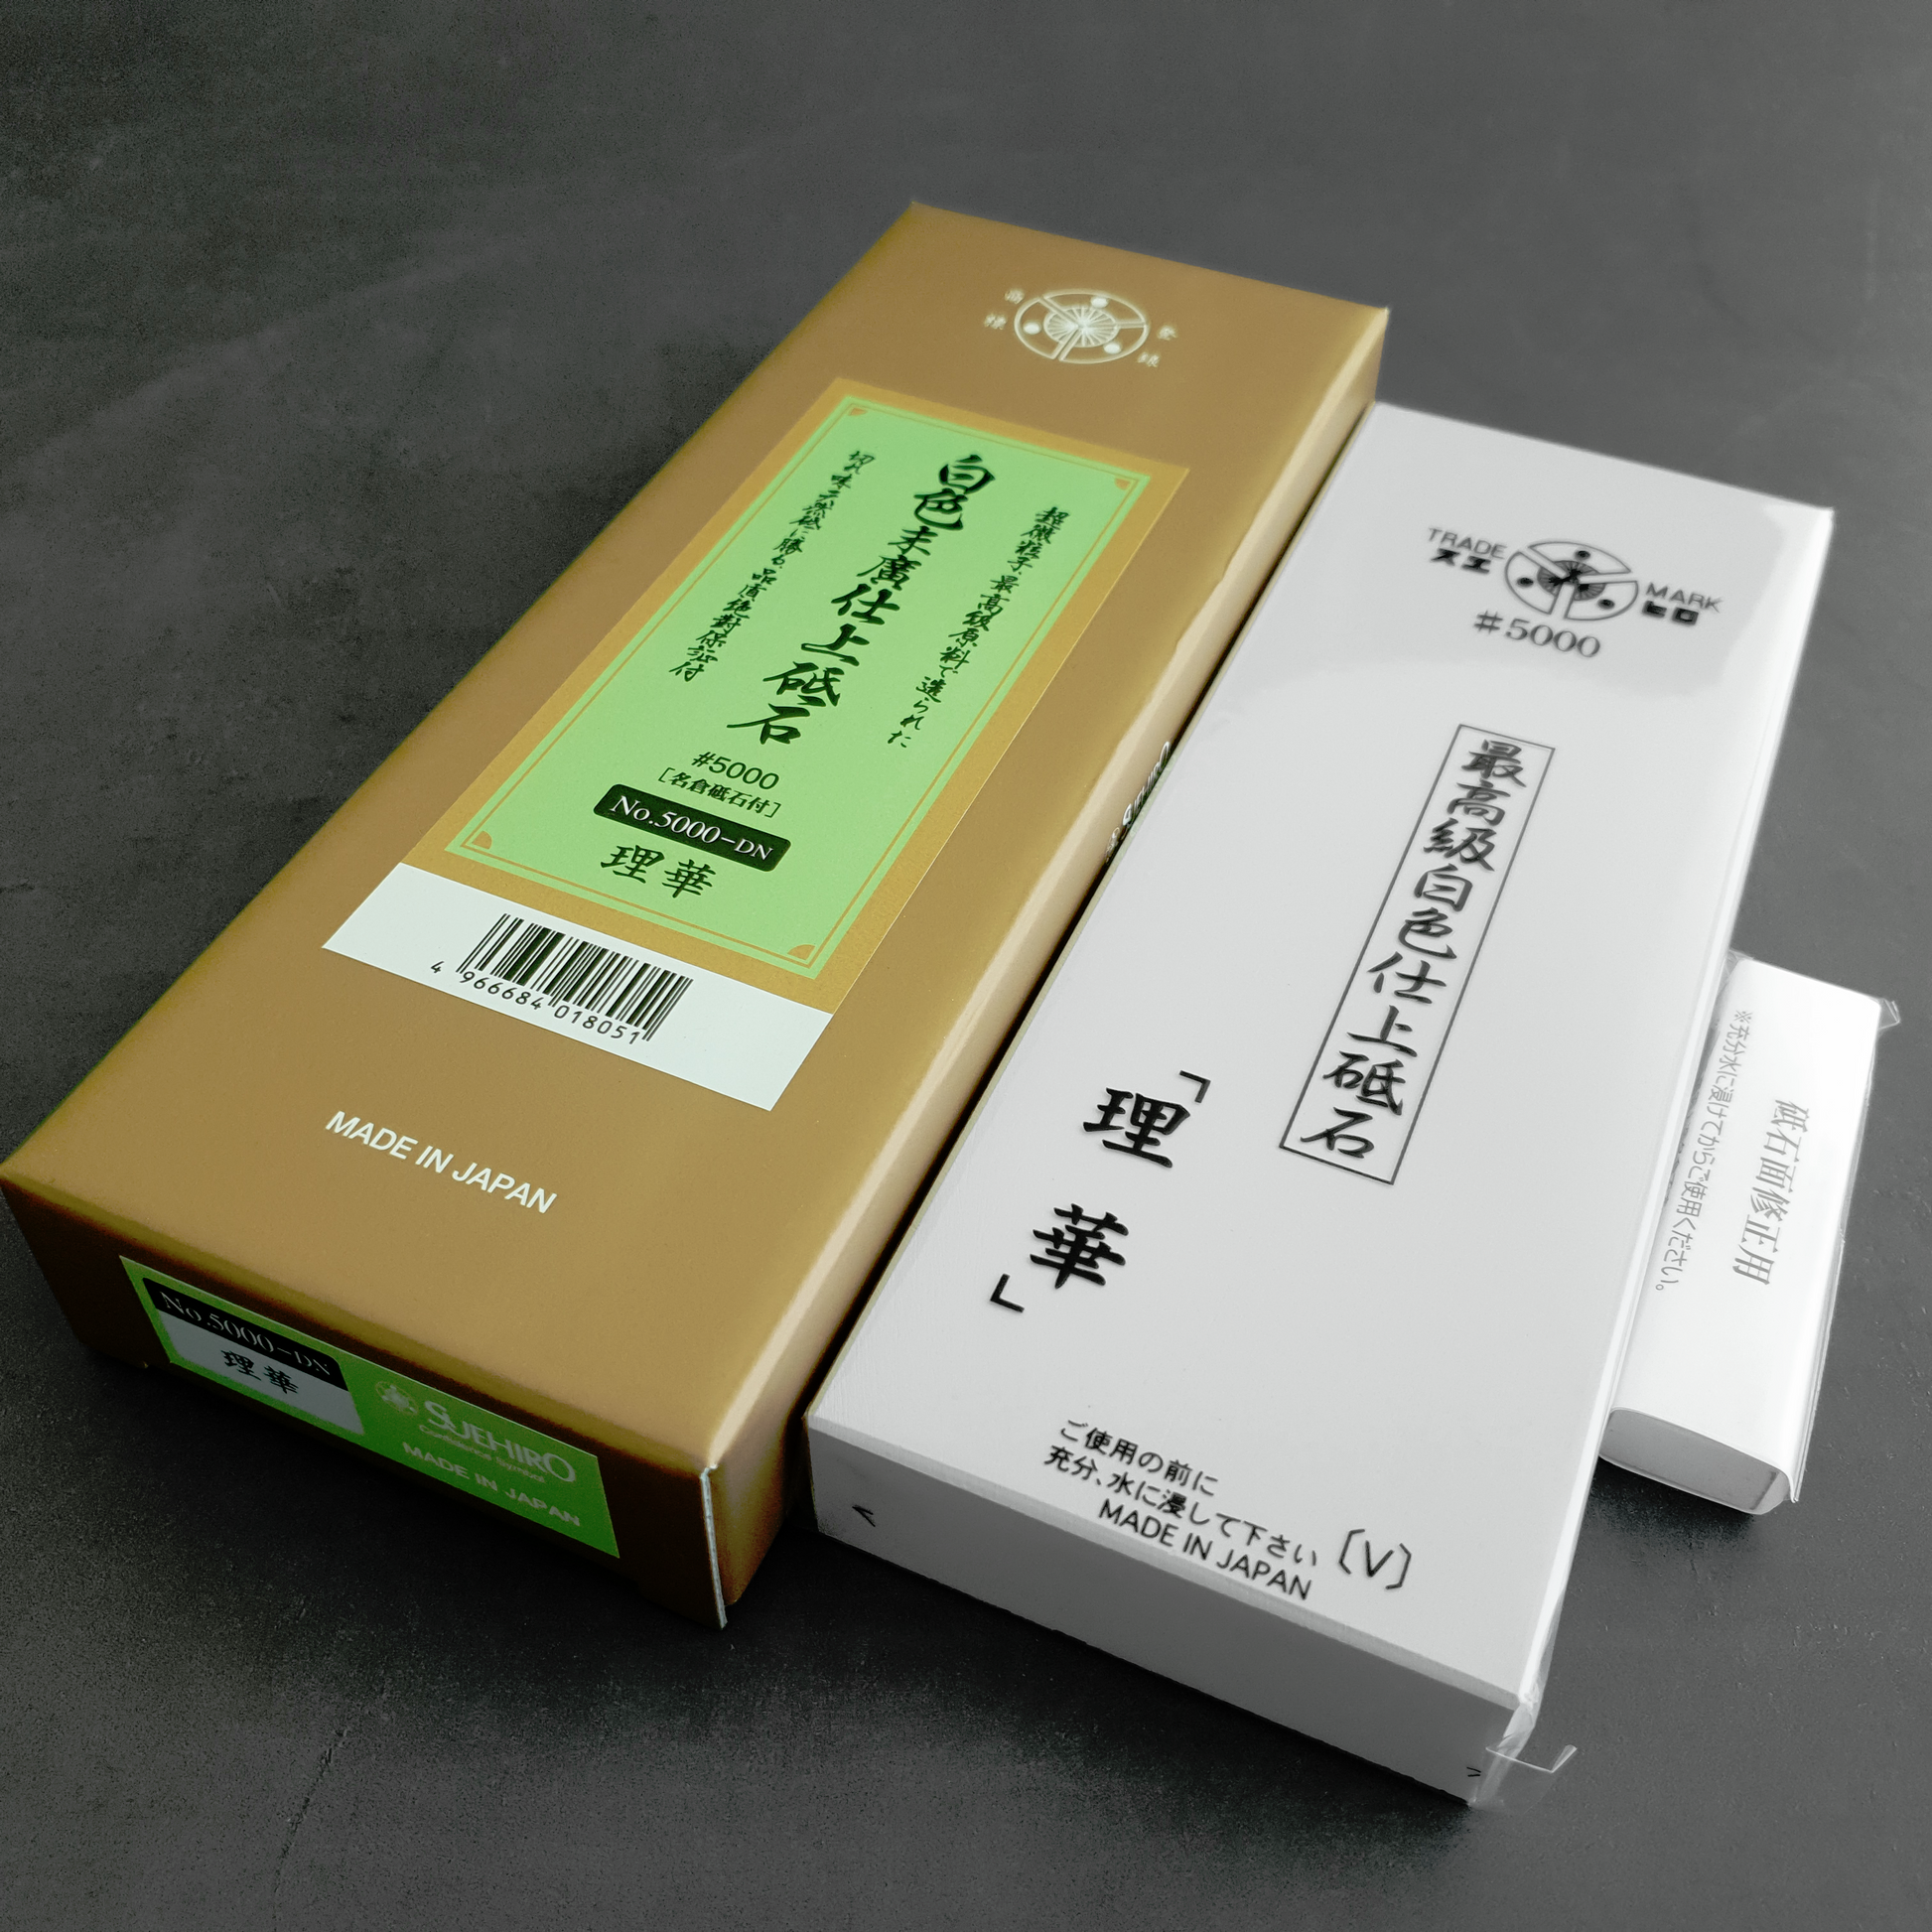 Suehiro Rika 5000 Grit Sharpening Stone Kasumi Finish Packaging Nagura Singapore